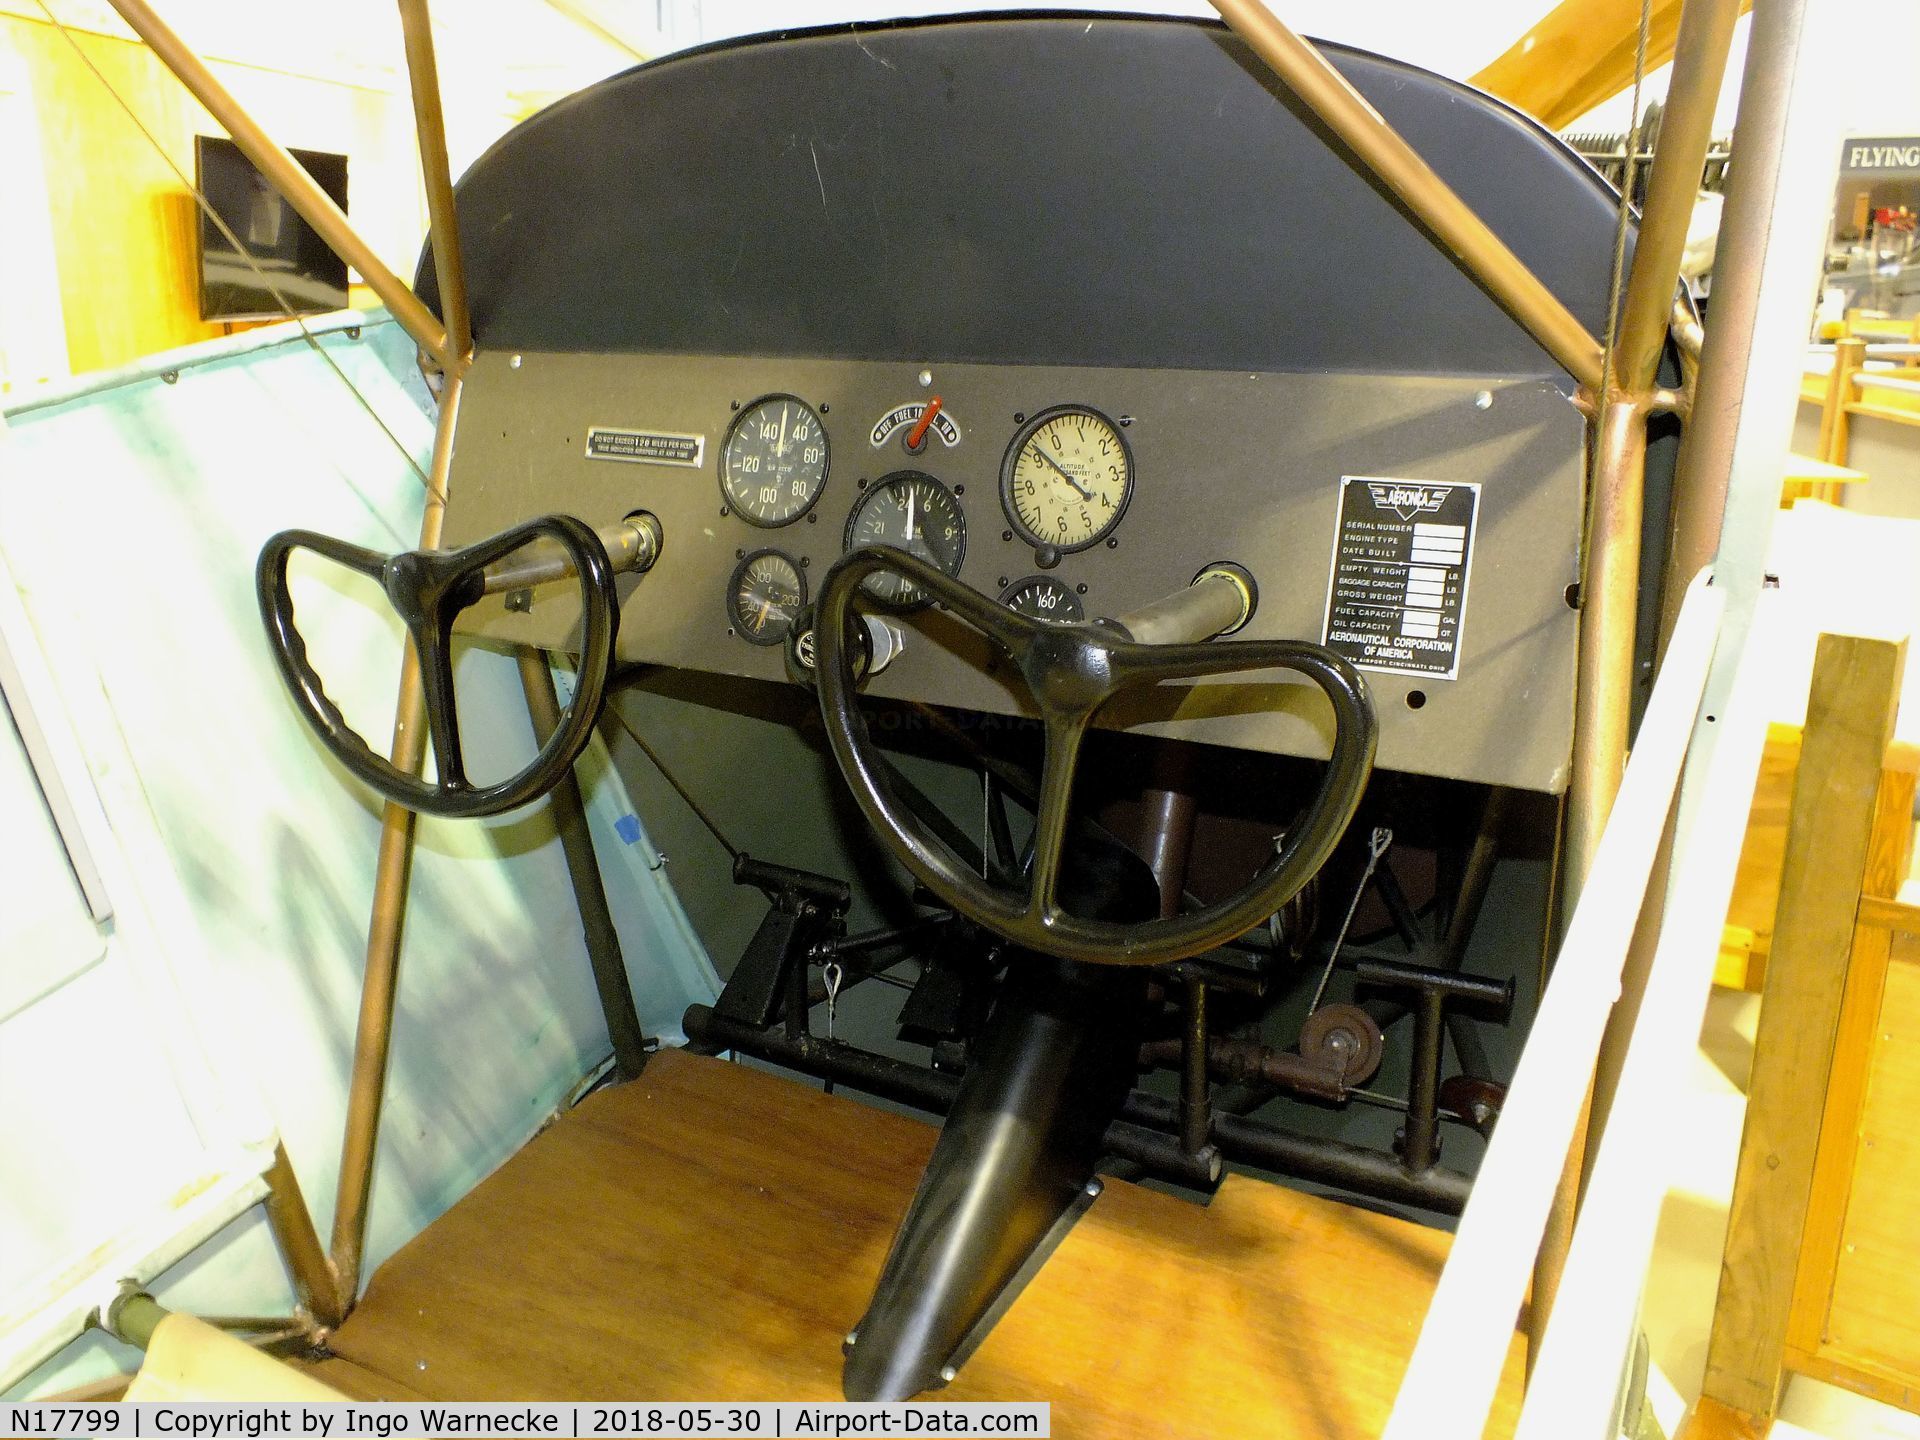 N17799, Aeronca K C/N K-66, Aeronca K 1 Scout (minus wings and starboard outer skin) at the Southern Museum of Flight, Birmingham AL  #c